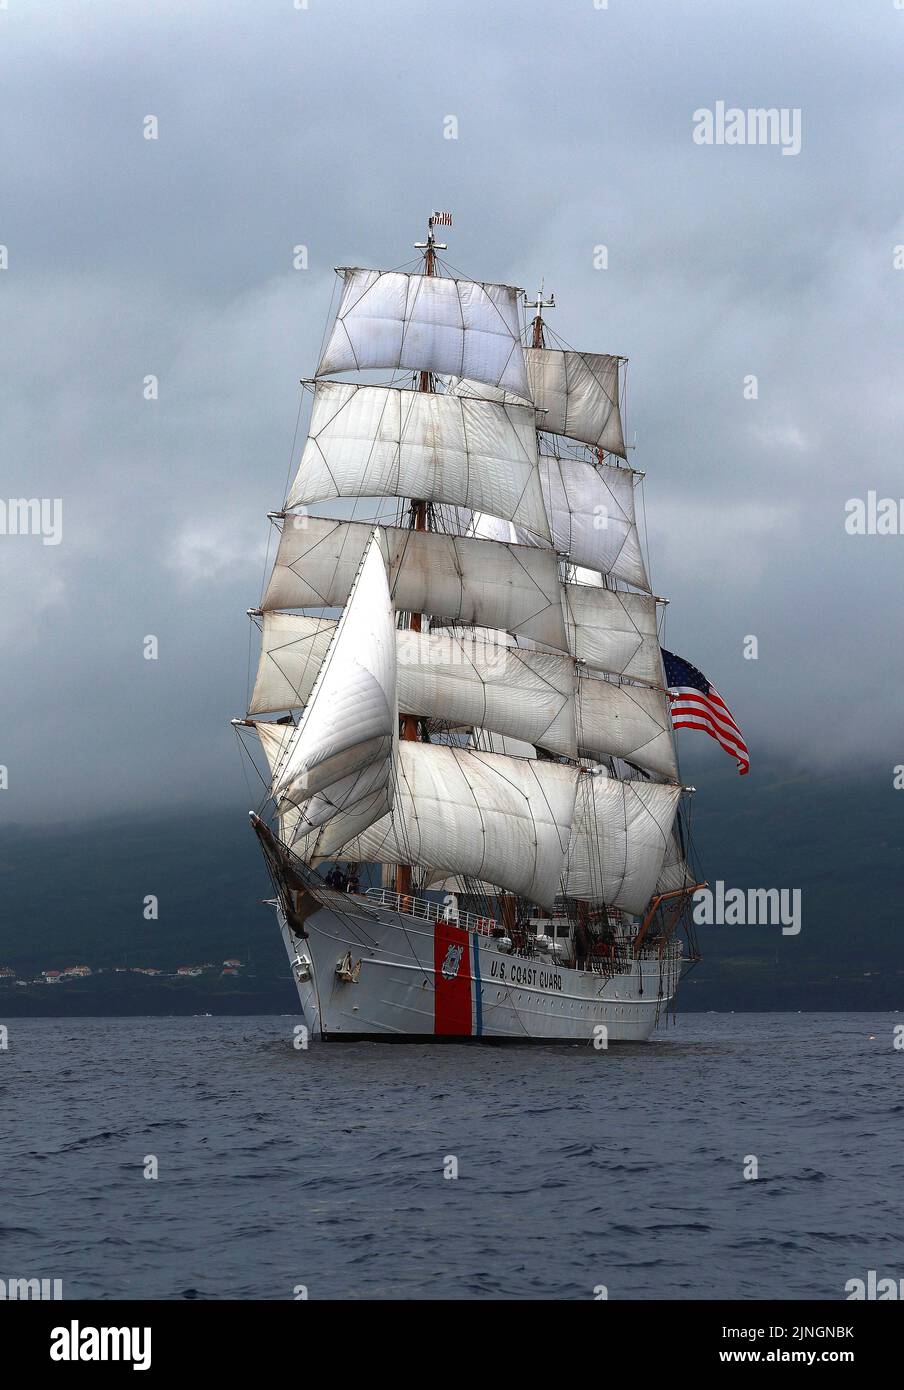 La Guardia Costera de EE.UU. CUTTER USCGC Aguila gran buque que exhibe velas completas mientras sale hacia el Océano Atlántico, 2 de julio de 2019 frente a la costa de las Azores. Foto de stock